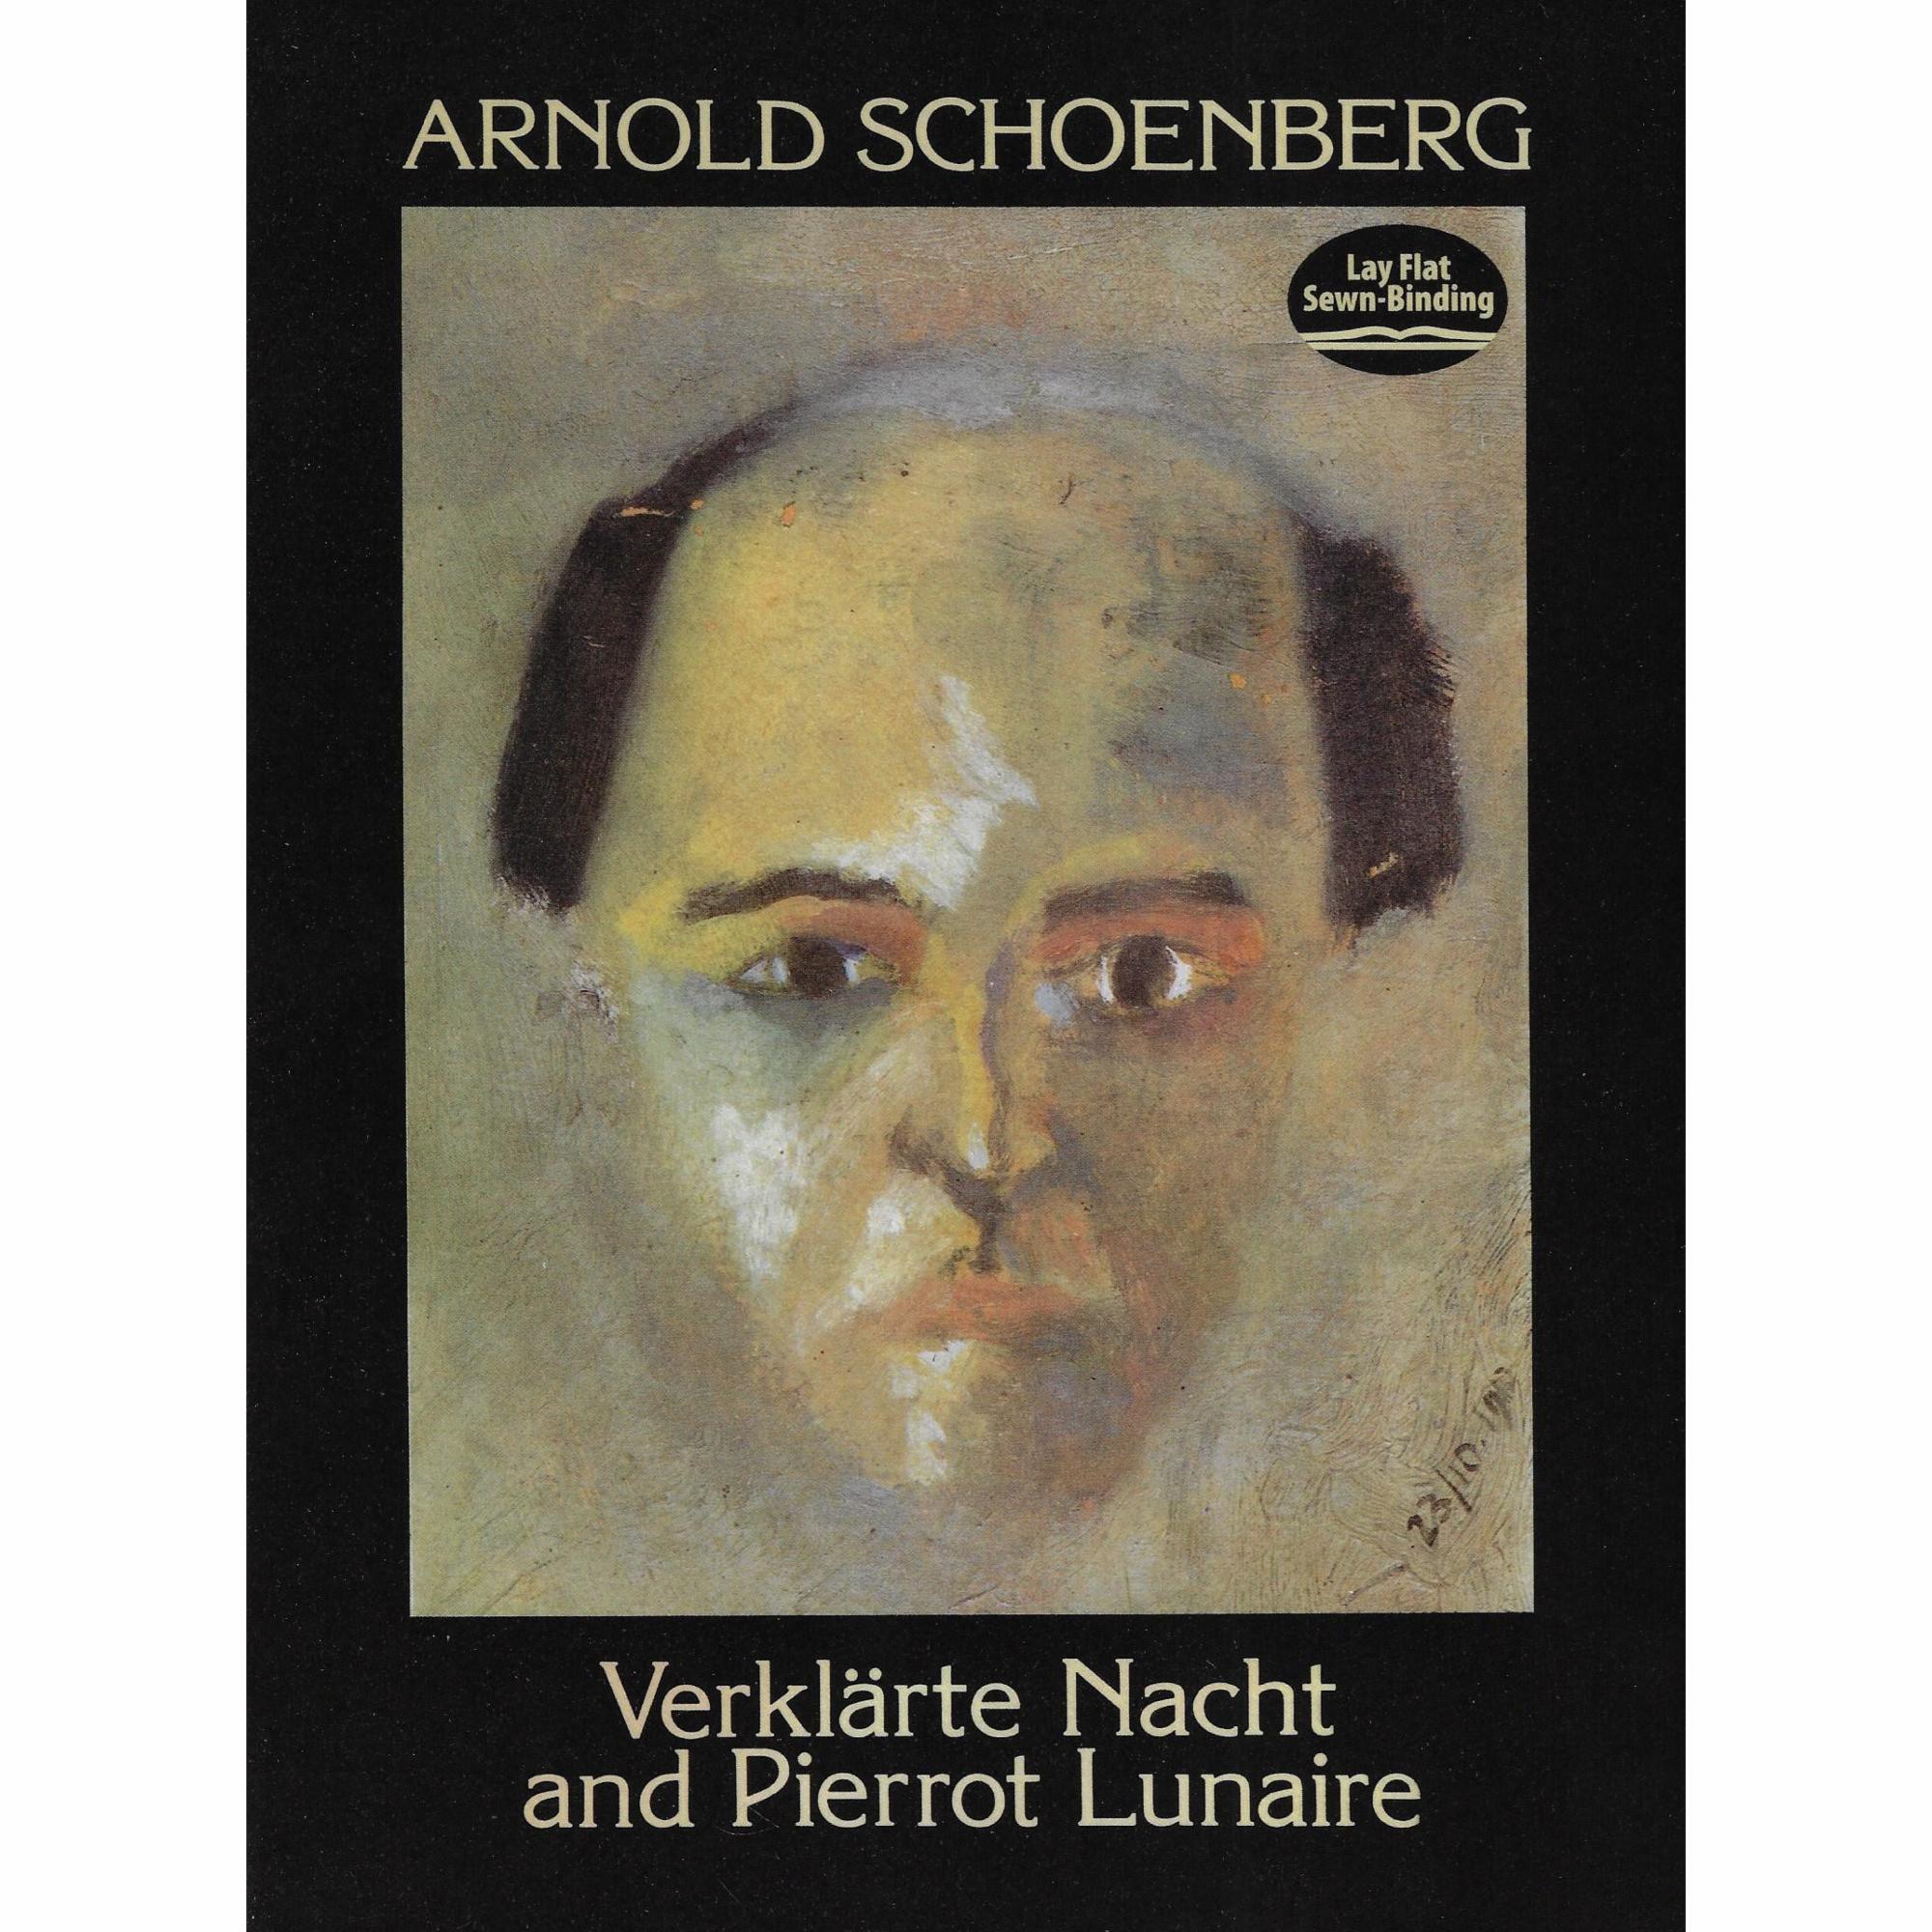 Schoenberg -- Verklaerte Nacht and Pierrot Lunaire